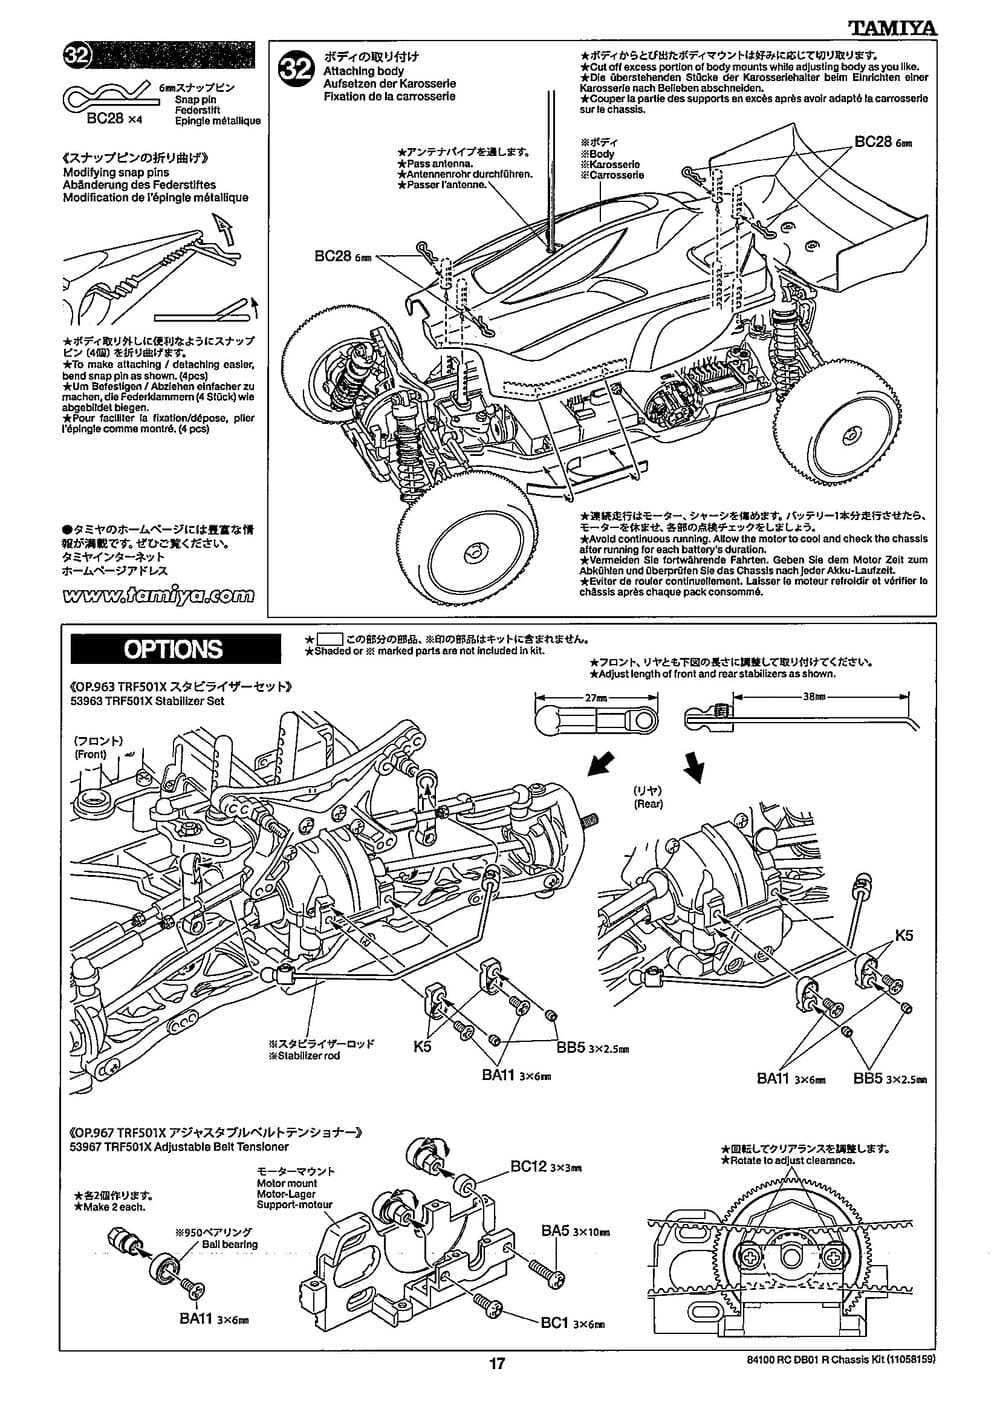 Tamiya - DB-01R Chassis - Manual - Page 17